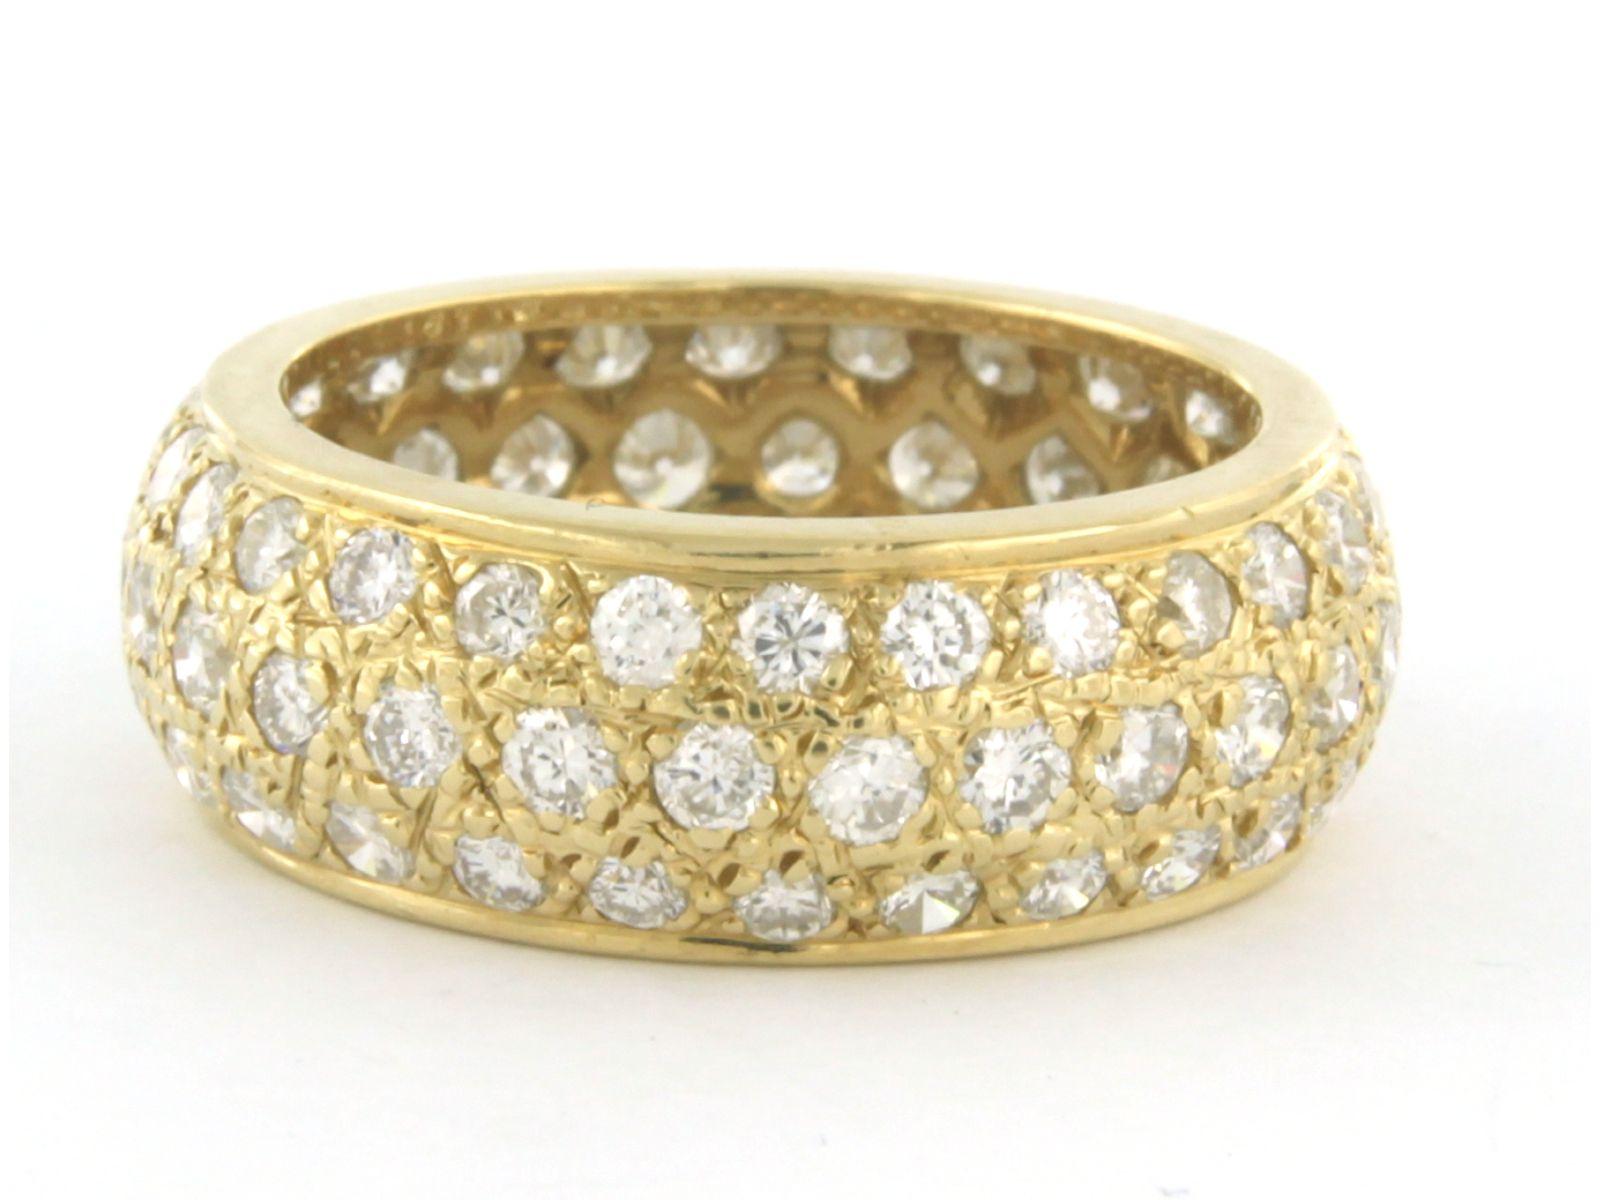 Ring aus 18 Karat Gelbgold, besetzt mit Diamanten im Brillantschliff. 2.50ct - F/G - VS/SI - Ringgröße U.S. 7.5 - EU. 17.75 (56)

detaillierte Beschreibung:

die Vorderseite des Rings ist 8.0 mm breit

Ring Größe US 7.5 - EU. 17.75 (56)

Gewicht 6,0